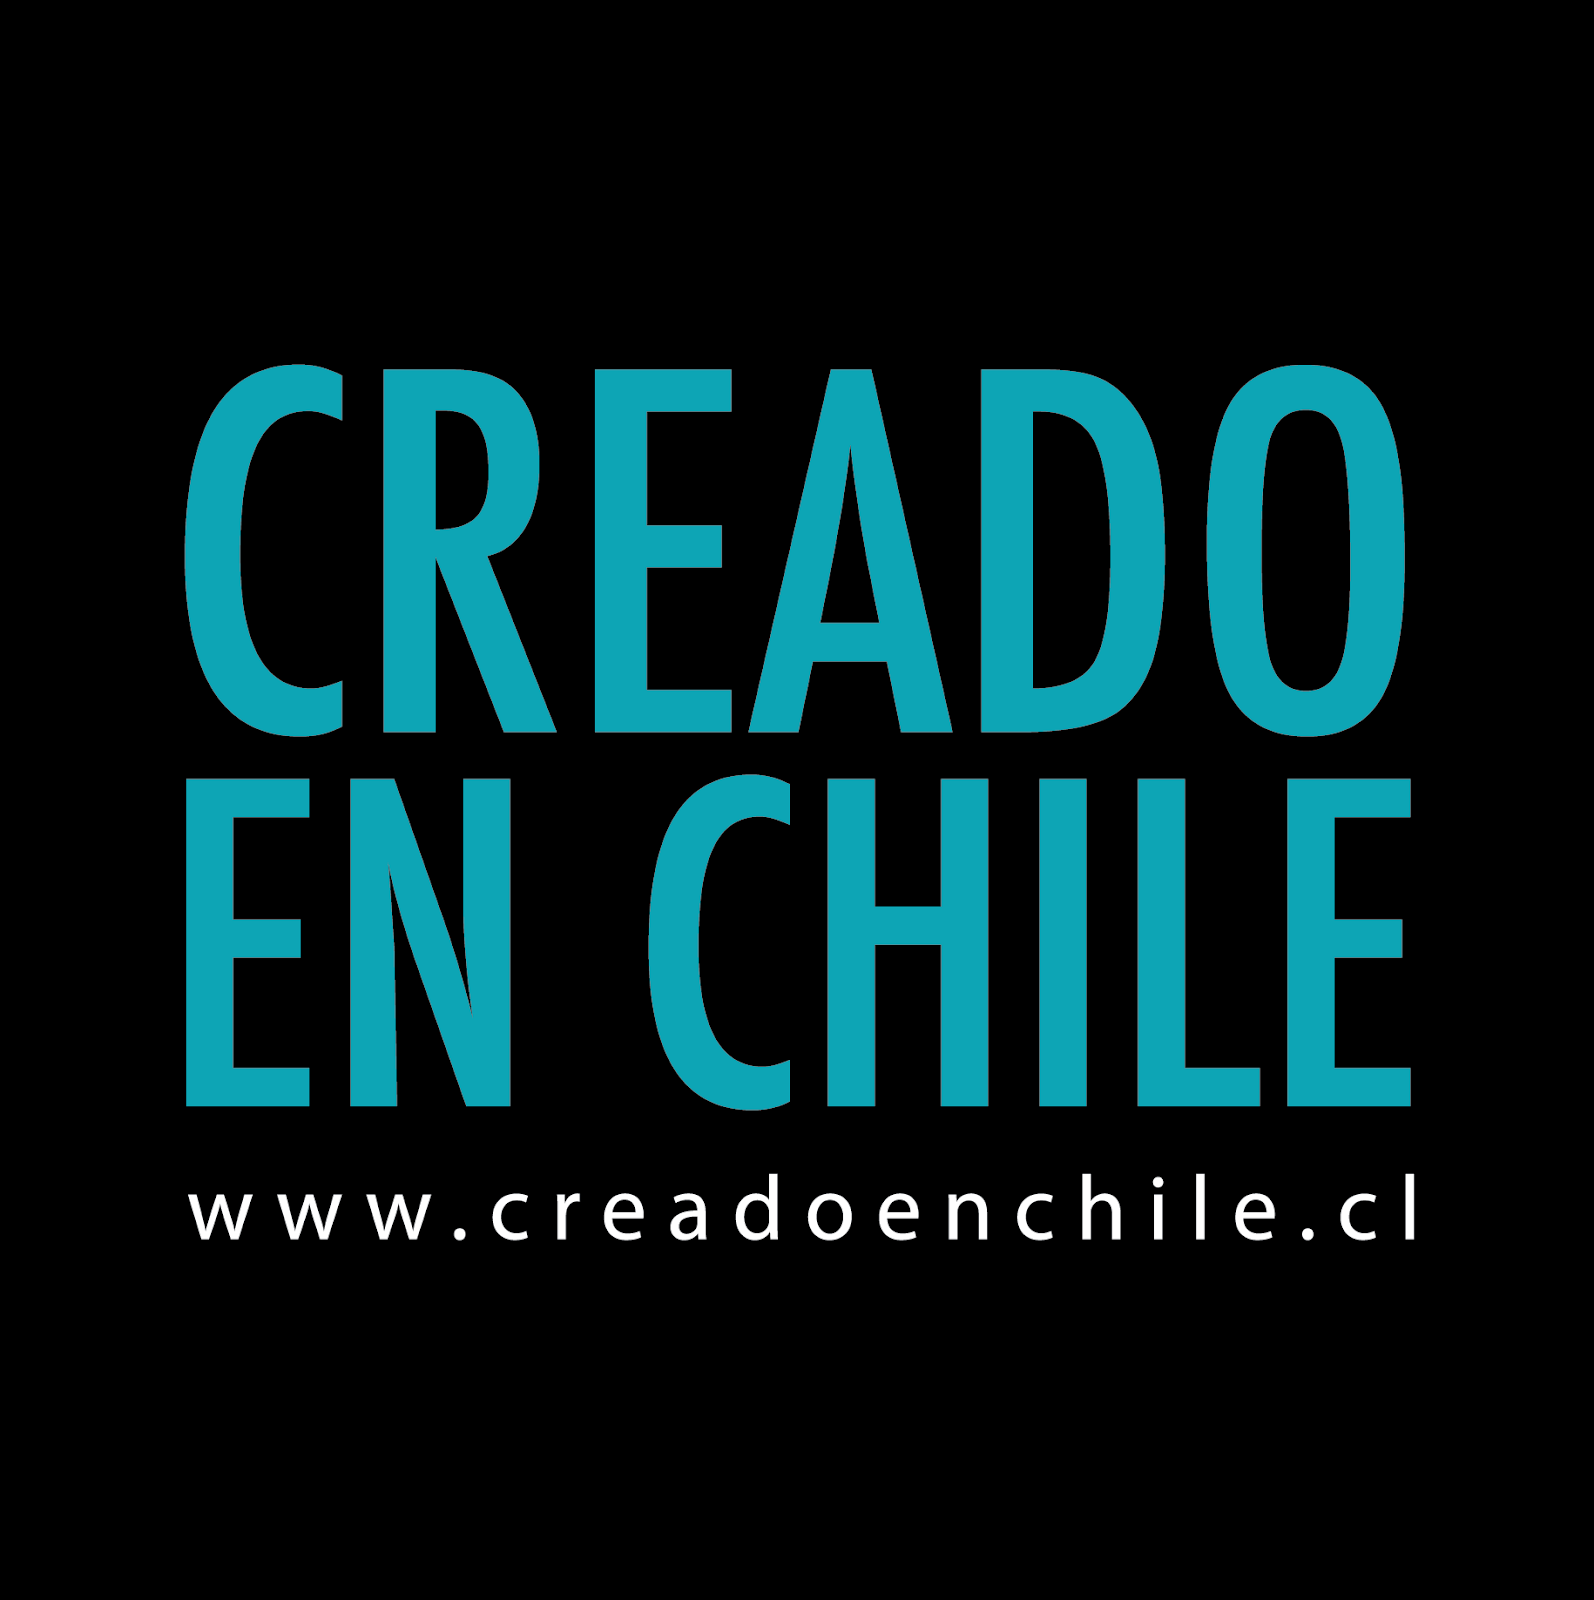 CREADO EN CHILE